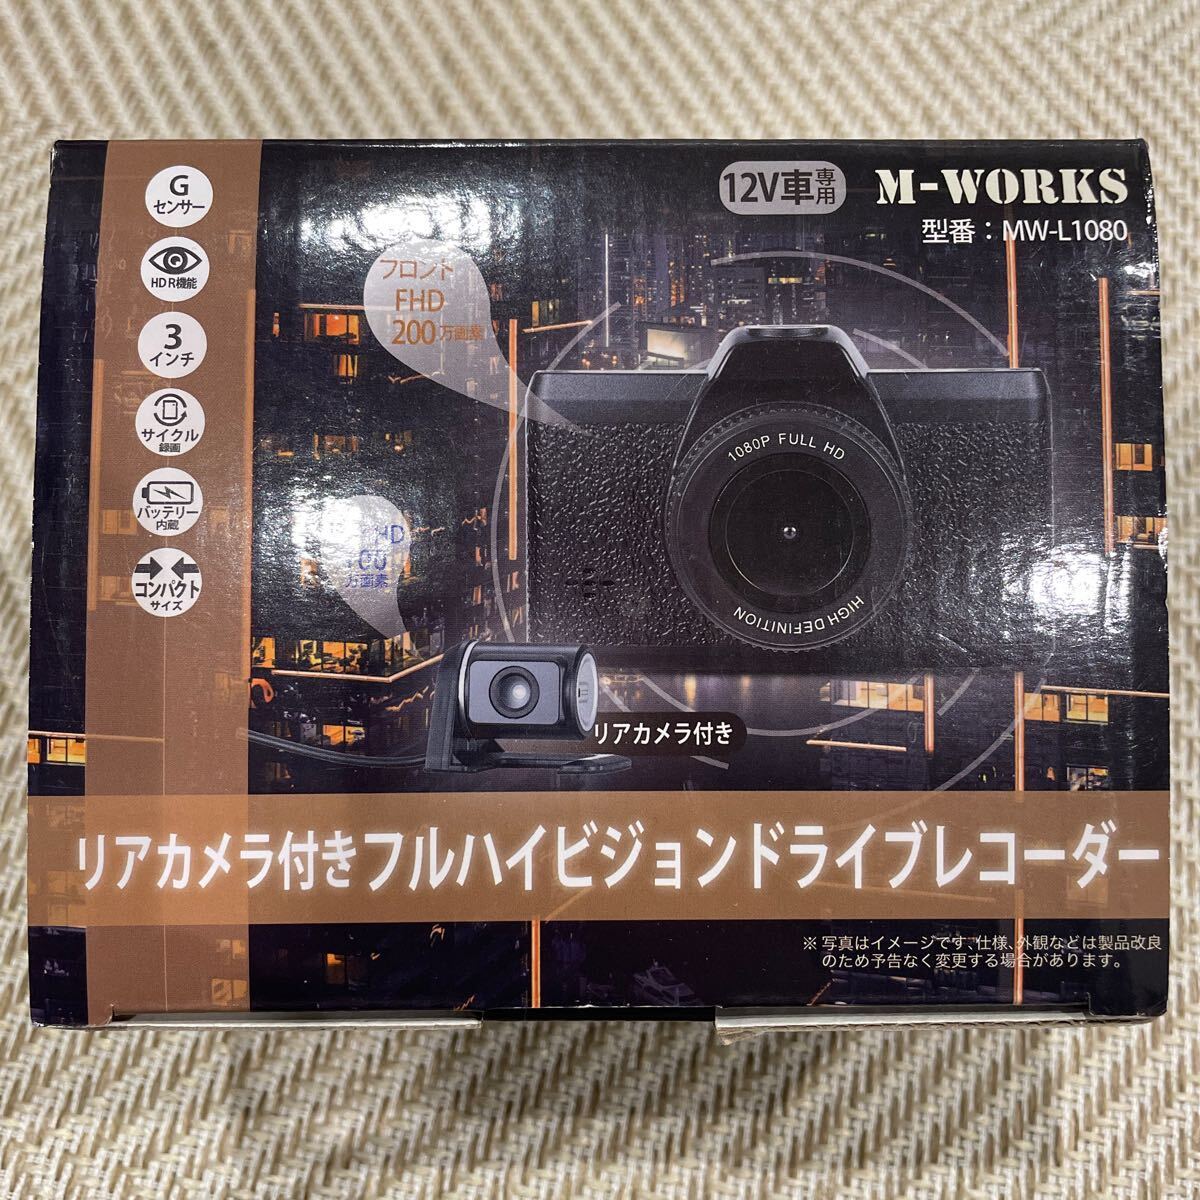 【未使用品】 M-works リアカメラ付き フルハイビジョン ドライブレコーダー の画像1